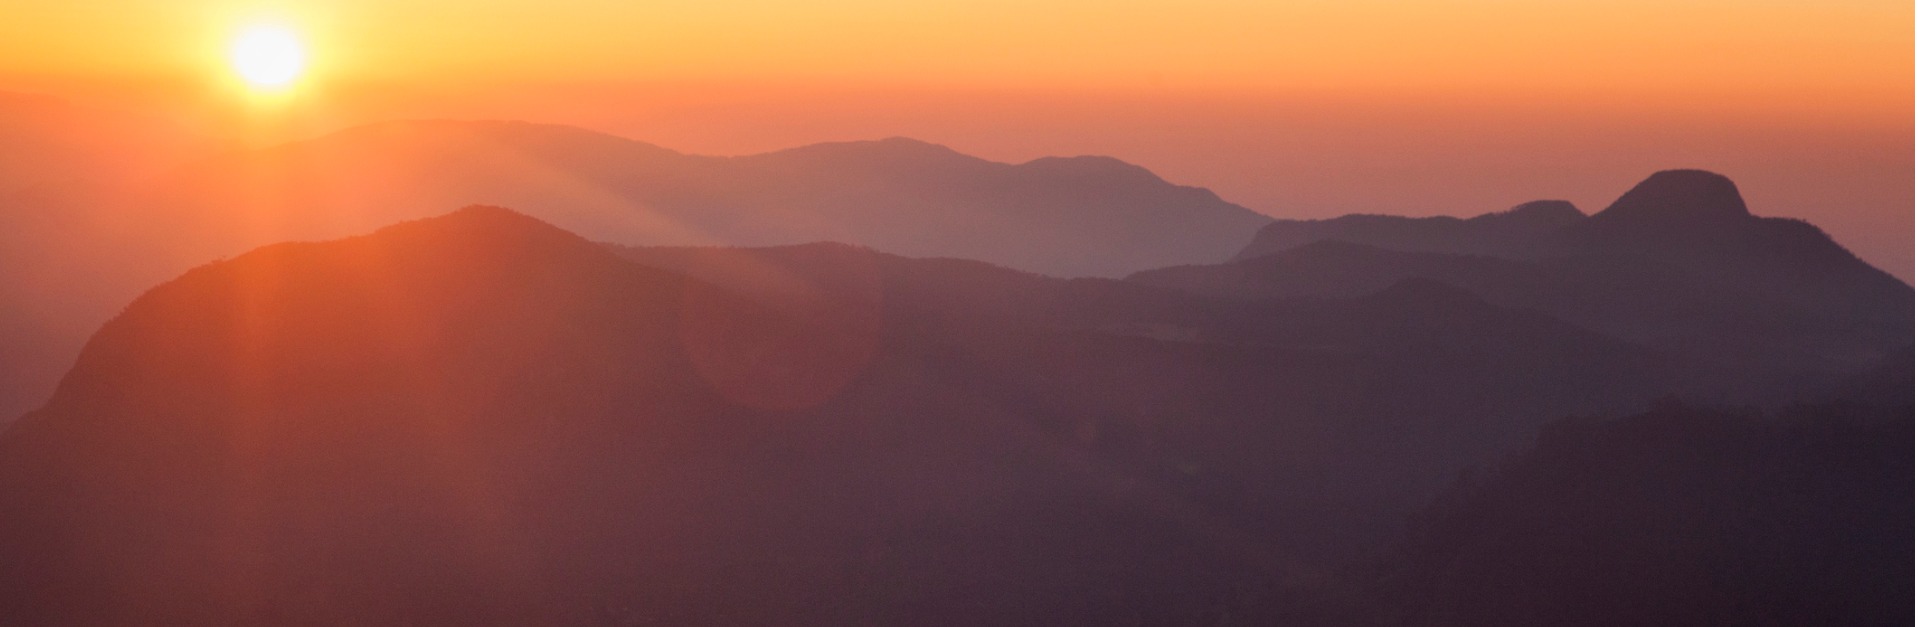 sunrise-over-adams-peak-sri-lanka-picture-id870478974